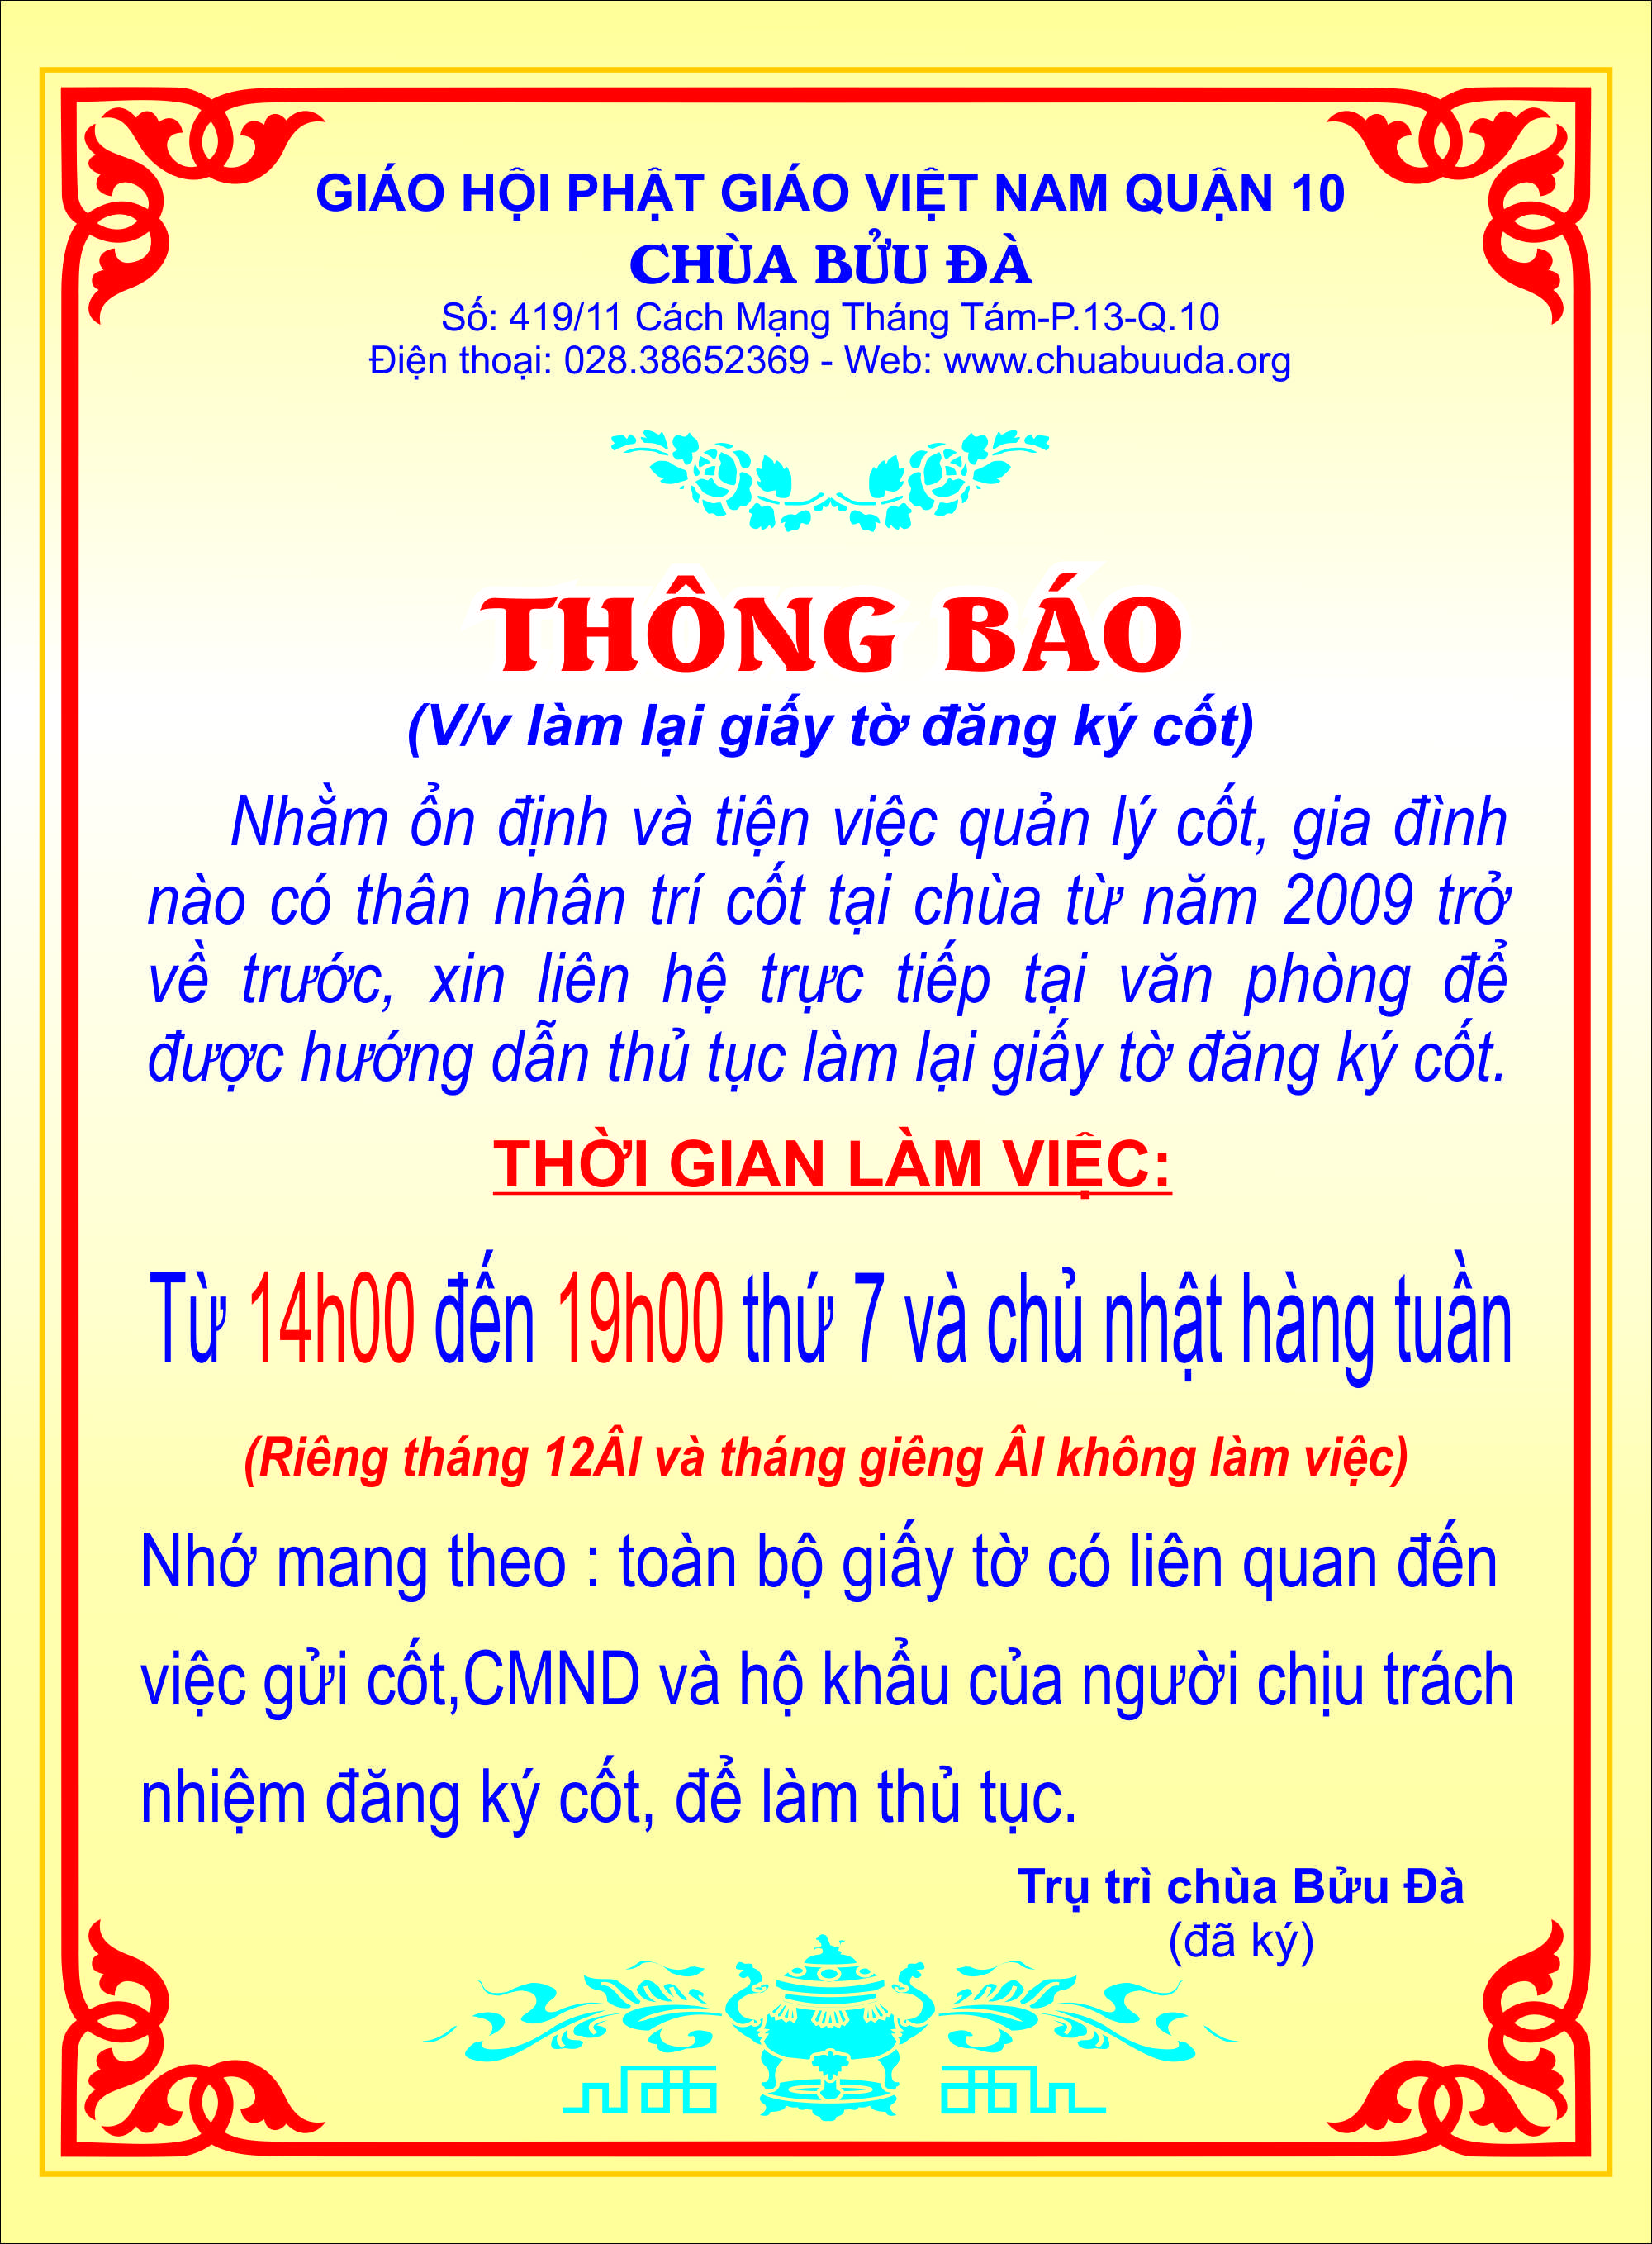 thong-bao-dang-ky-cot_2